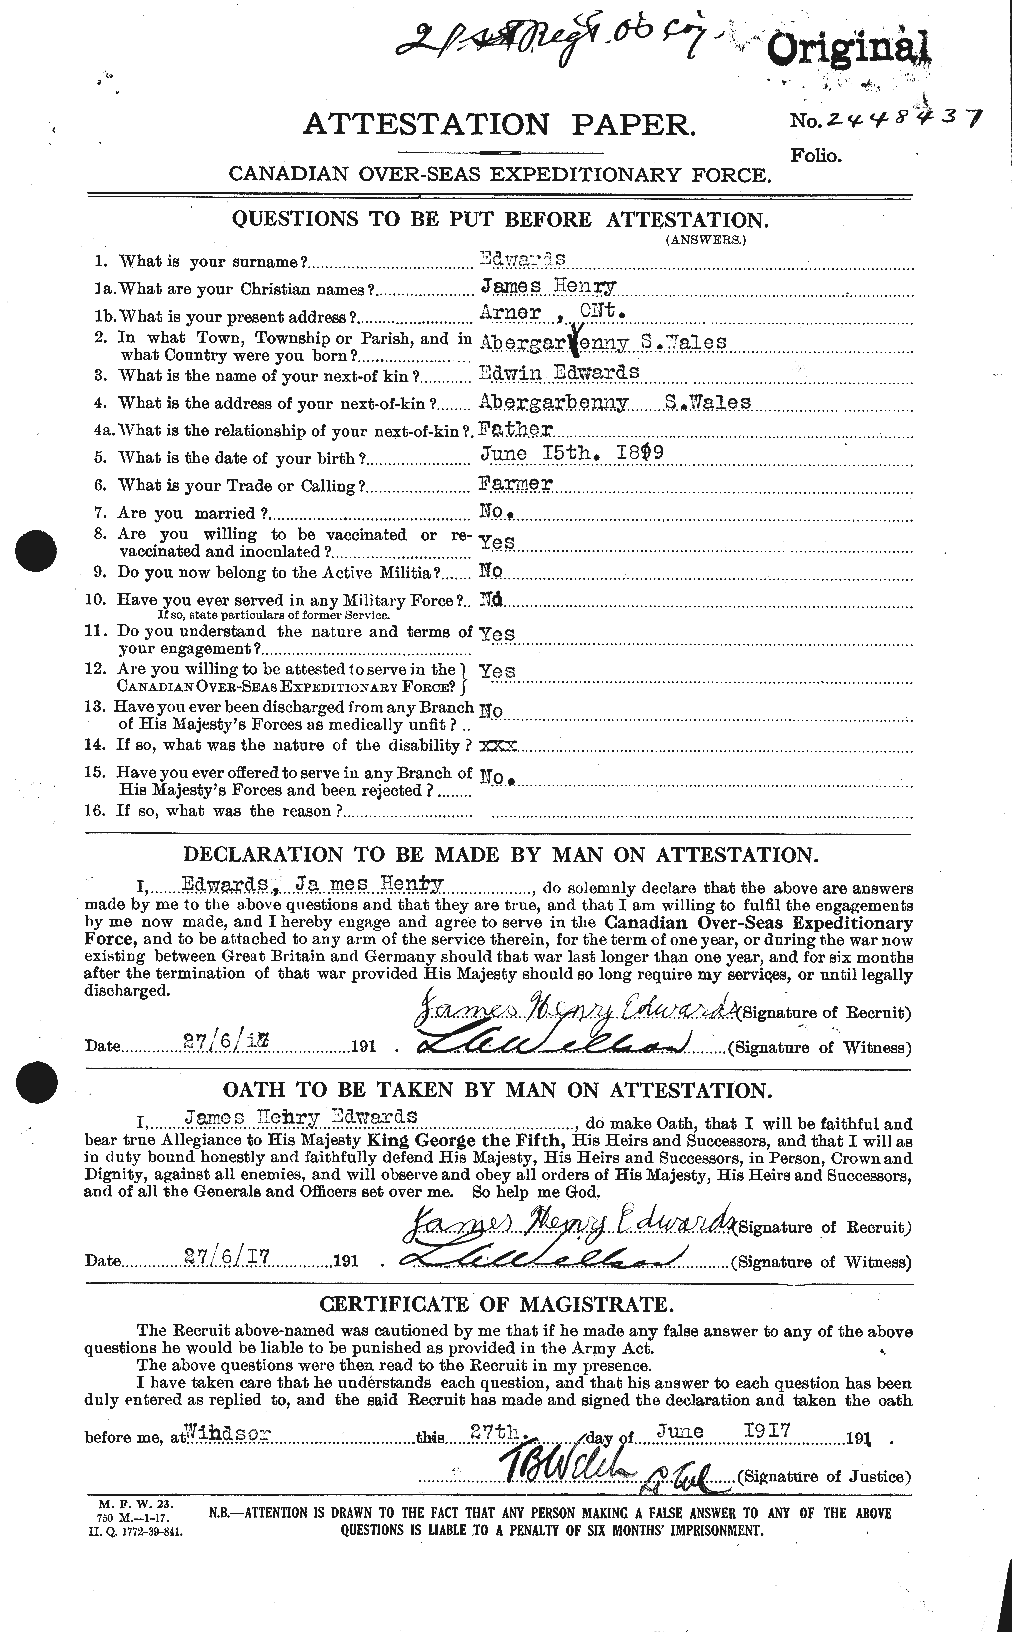 Dossiers du Personnel de la Première Guerre mondiale - CEC 309818a